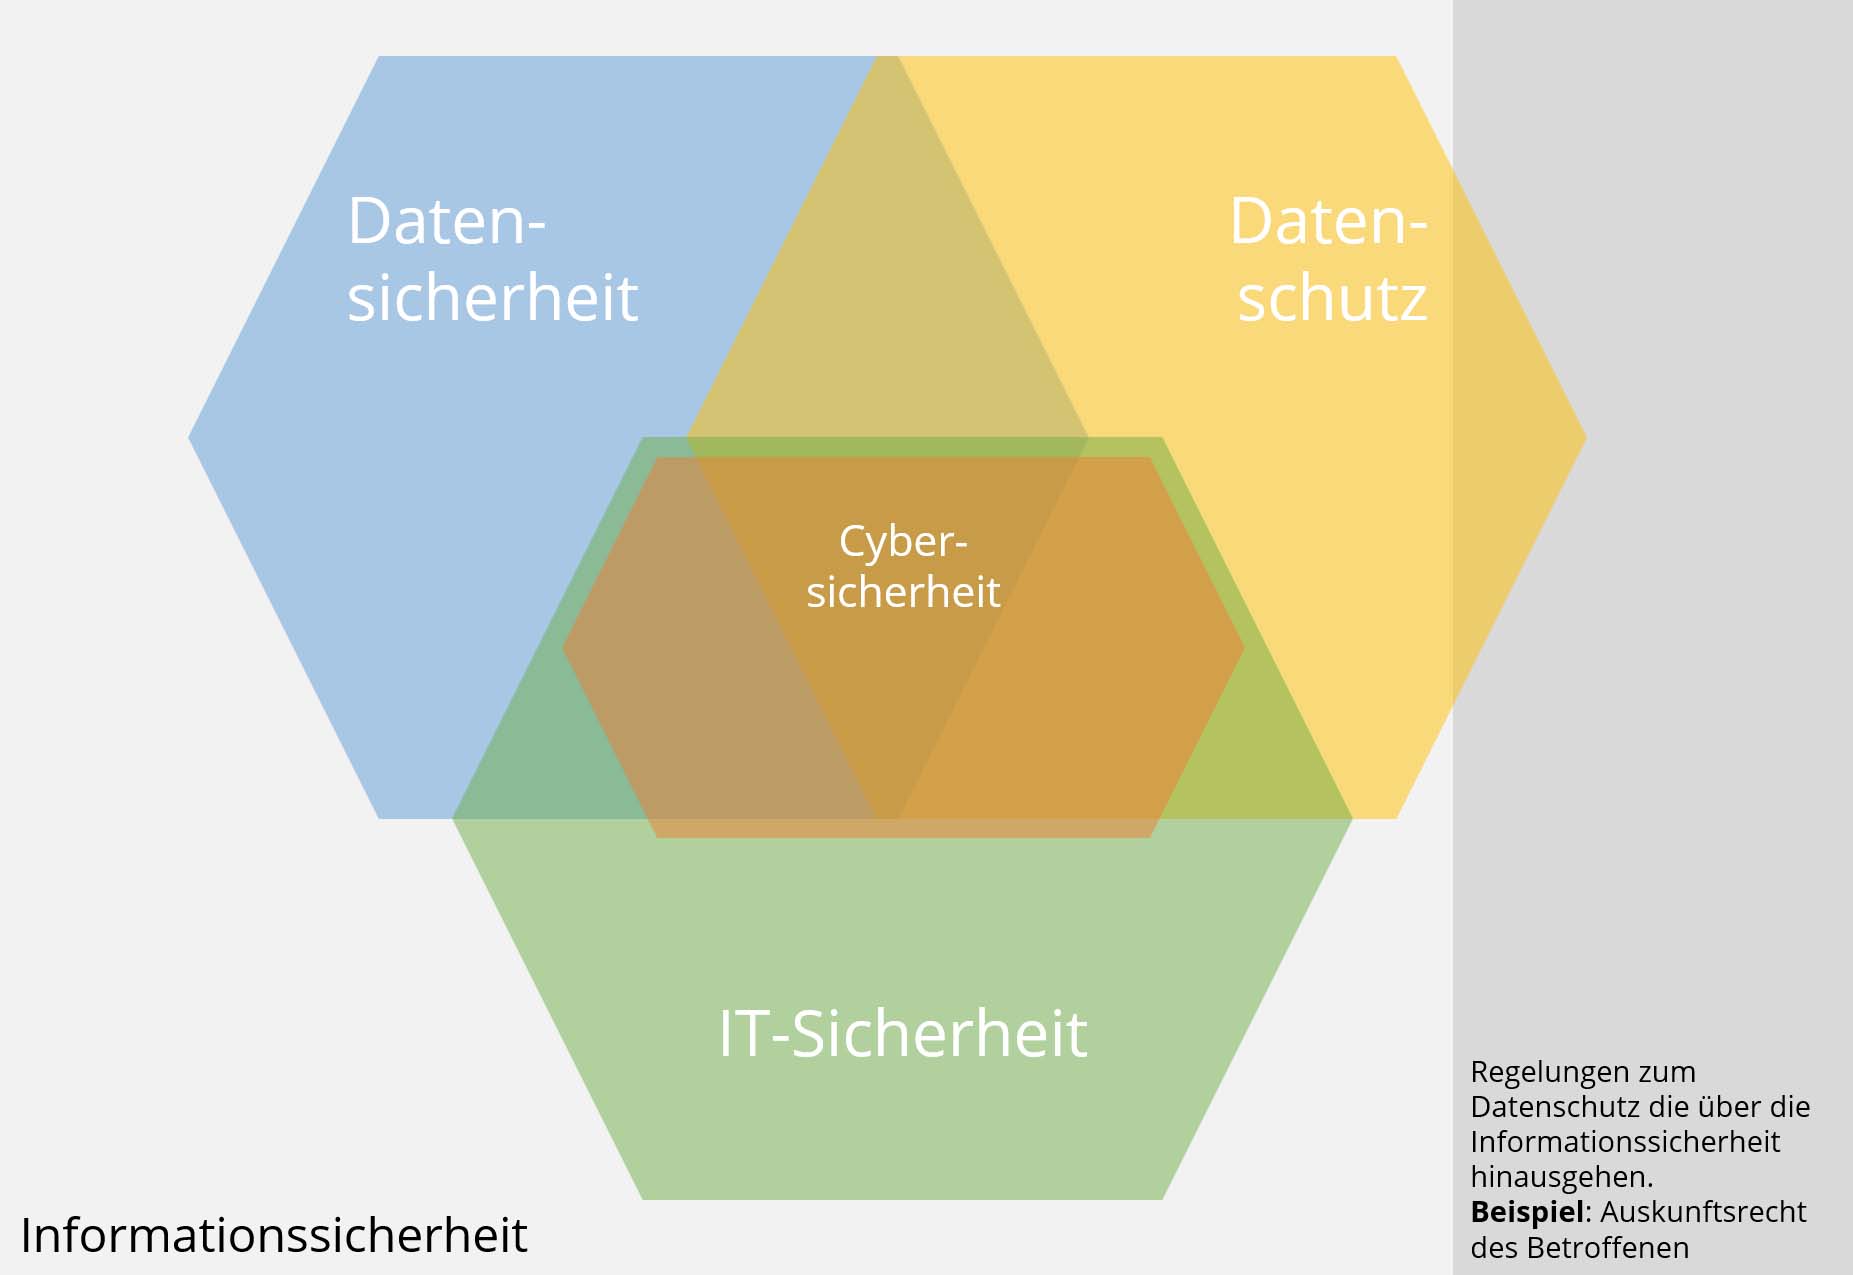 Informationssicherheit vs. Datensicherheit vs. IT-Sicherheit vs. Cybersicherheit